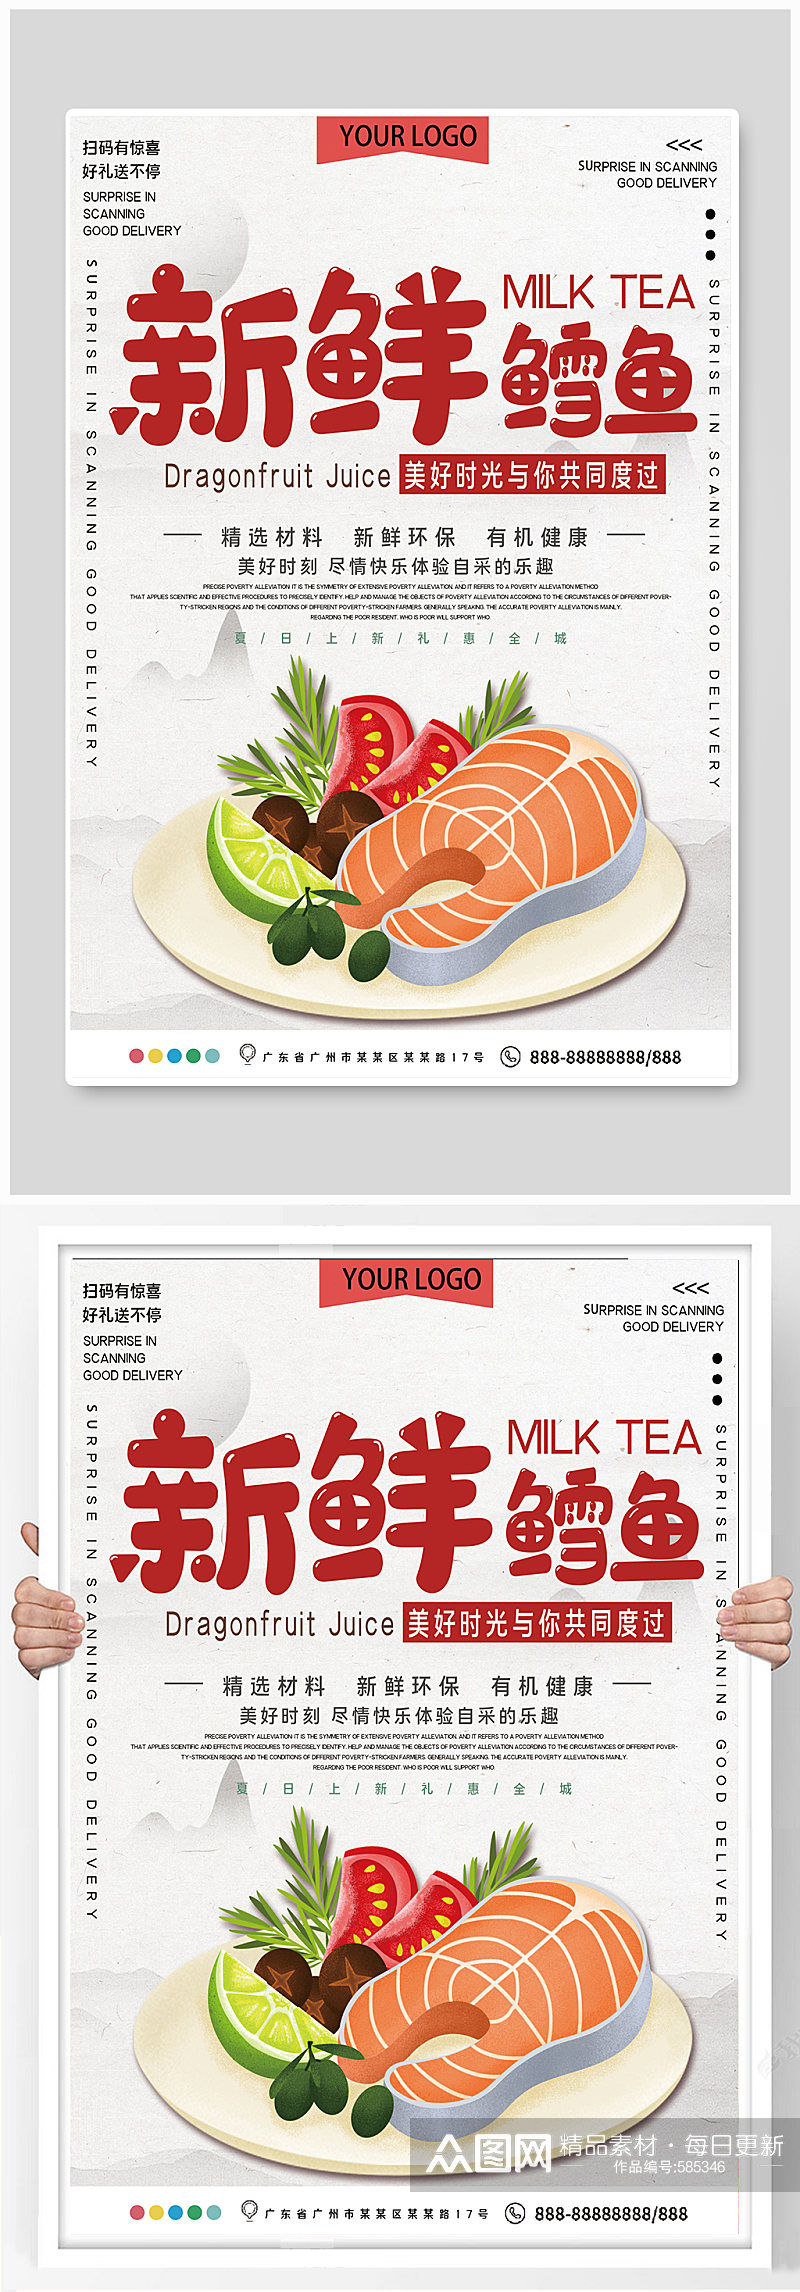 新鲜鳕鱼美食宣传海报素材